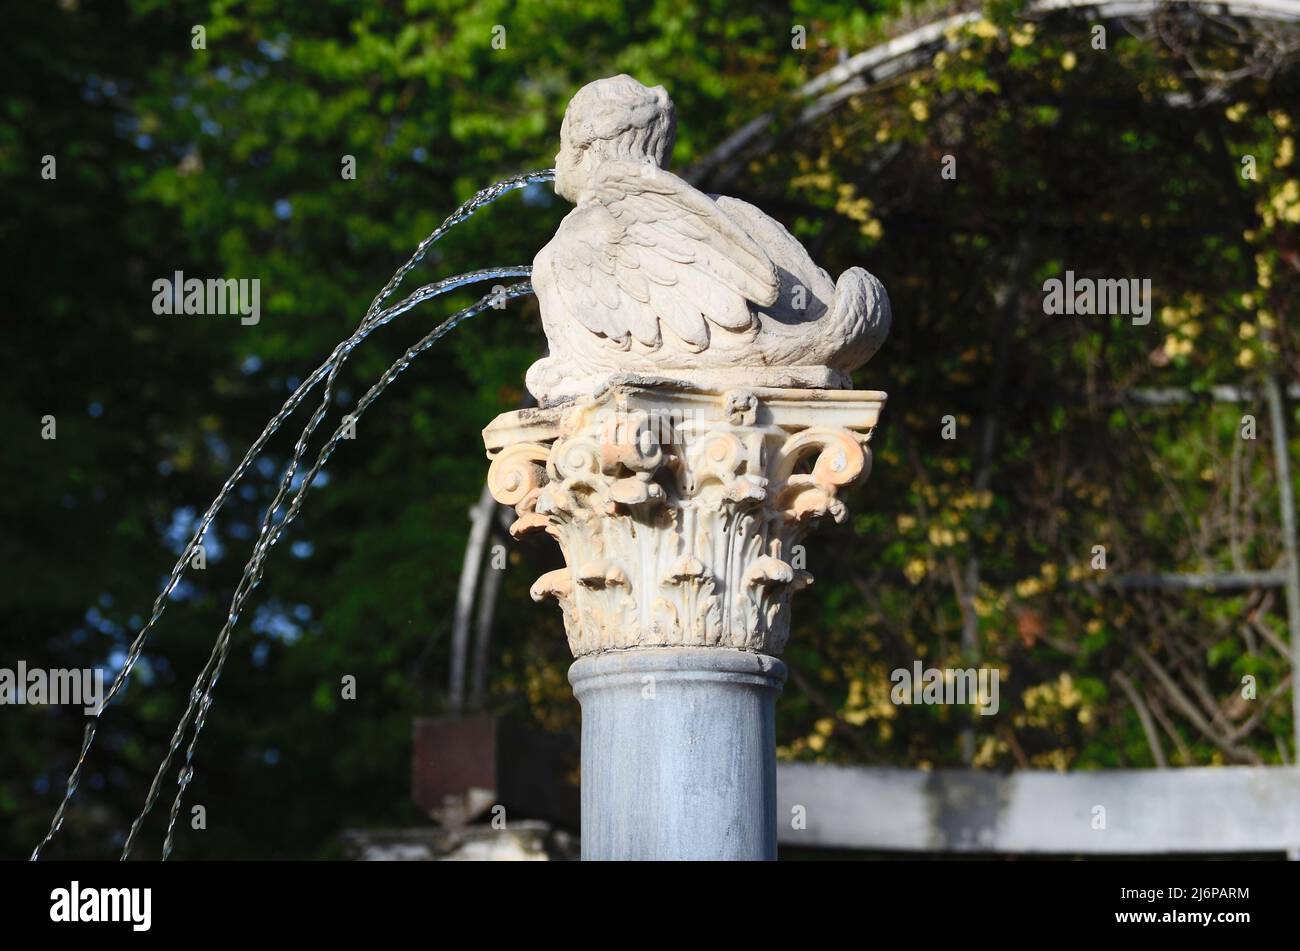 Fuente de las Harpías stone statue in the Gardens of Aranjuez Stock Photo